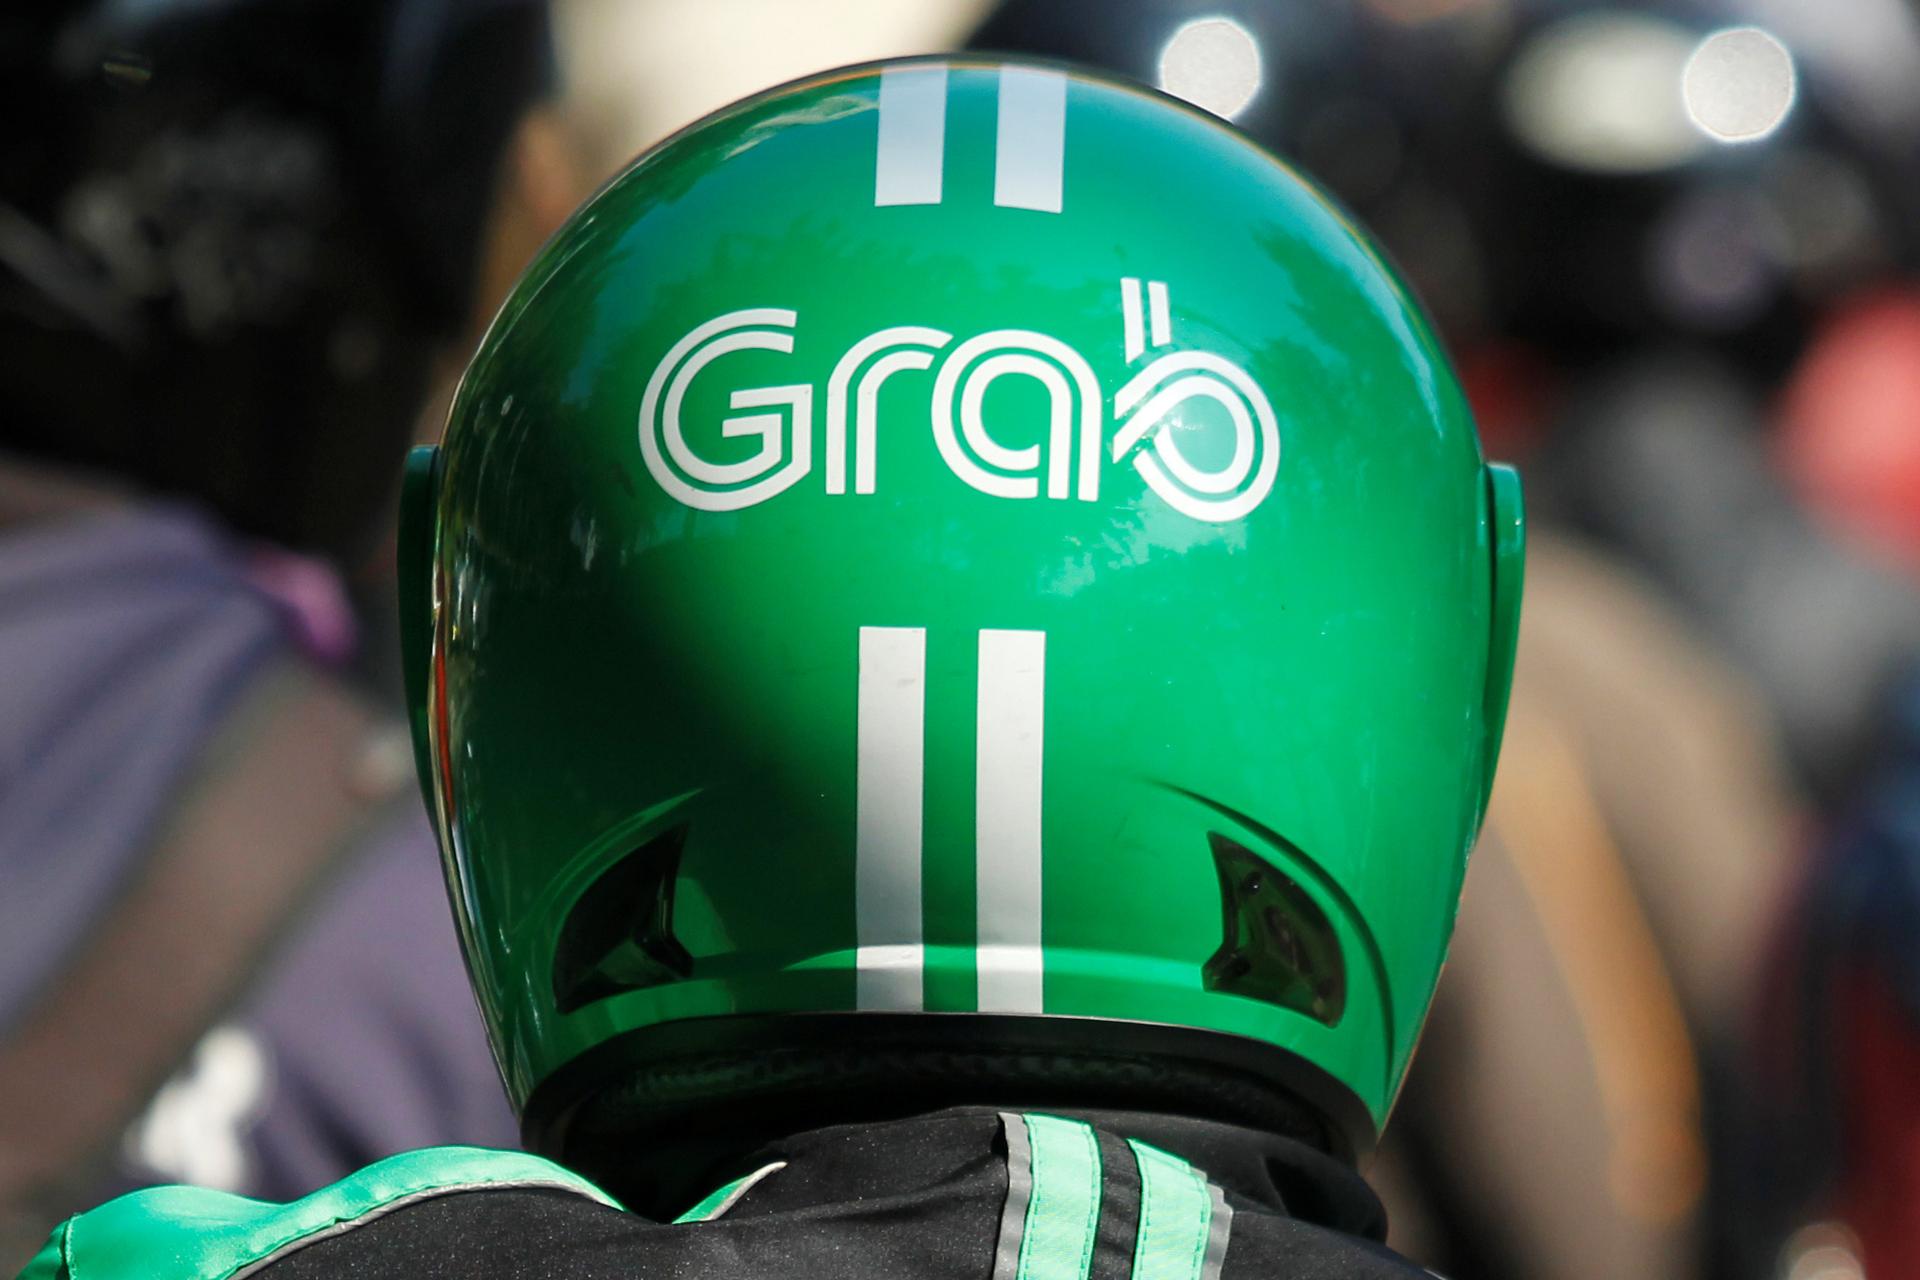 A Grab green helmet up close